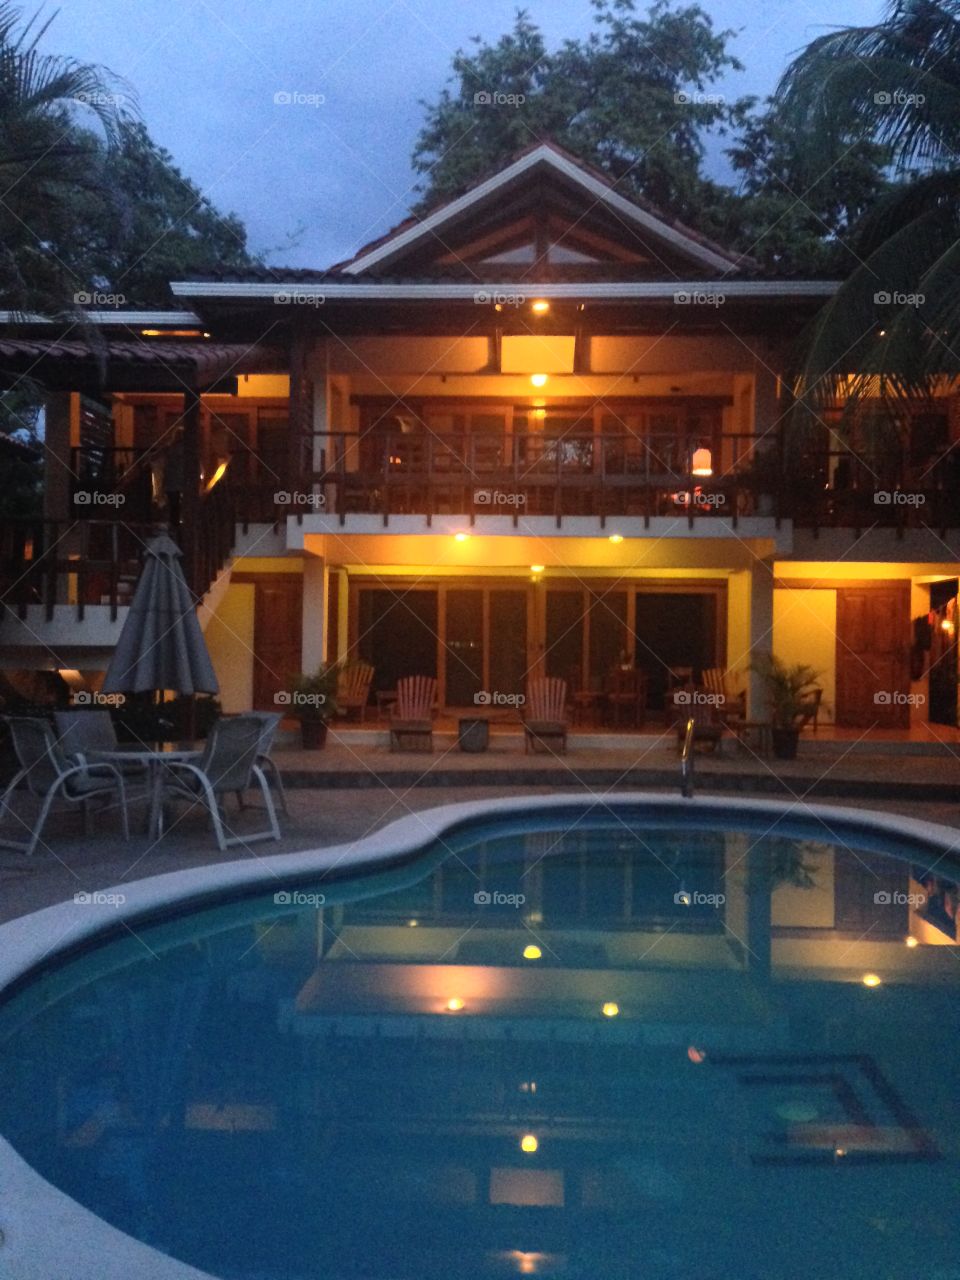 Casa Cook. Hotel in Costa Rica